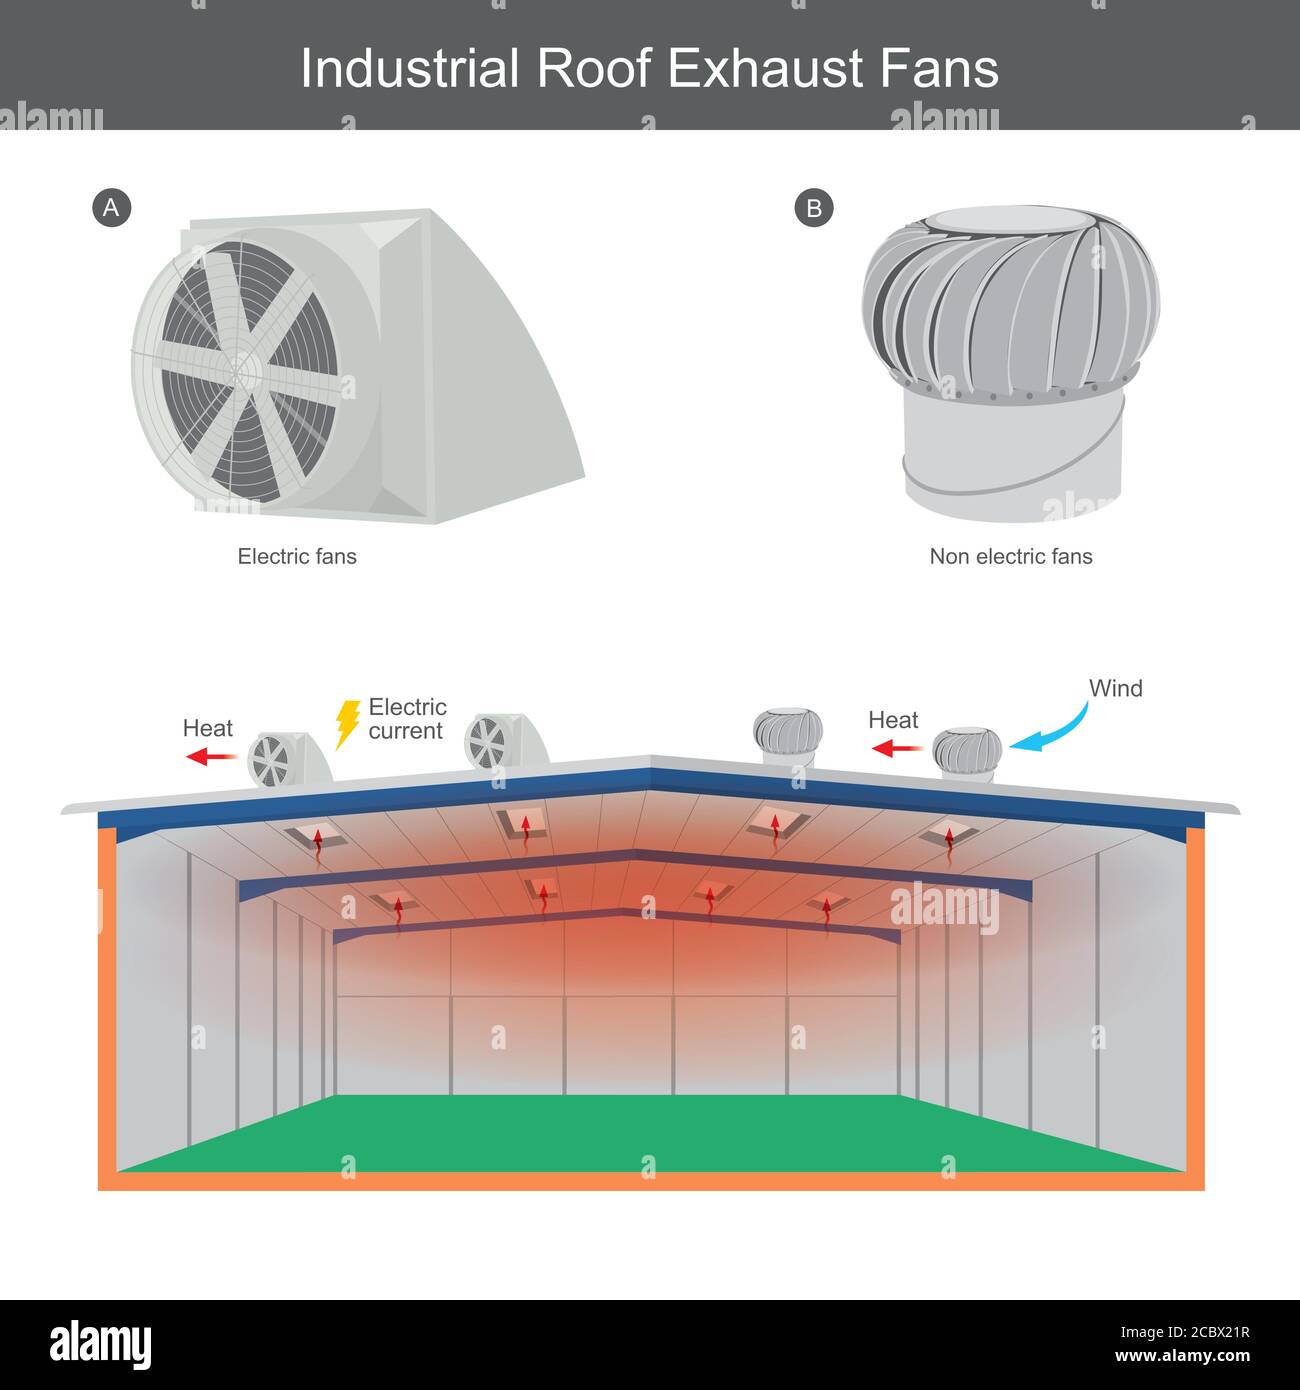 Ventole di scarico per tetto industriali. Illustrazione spiegare che è possibile allontanare il calore dalla fabbrica utilizzando una ventola di scarico sopra il tetto. Illustrazione Vettoriale